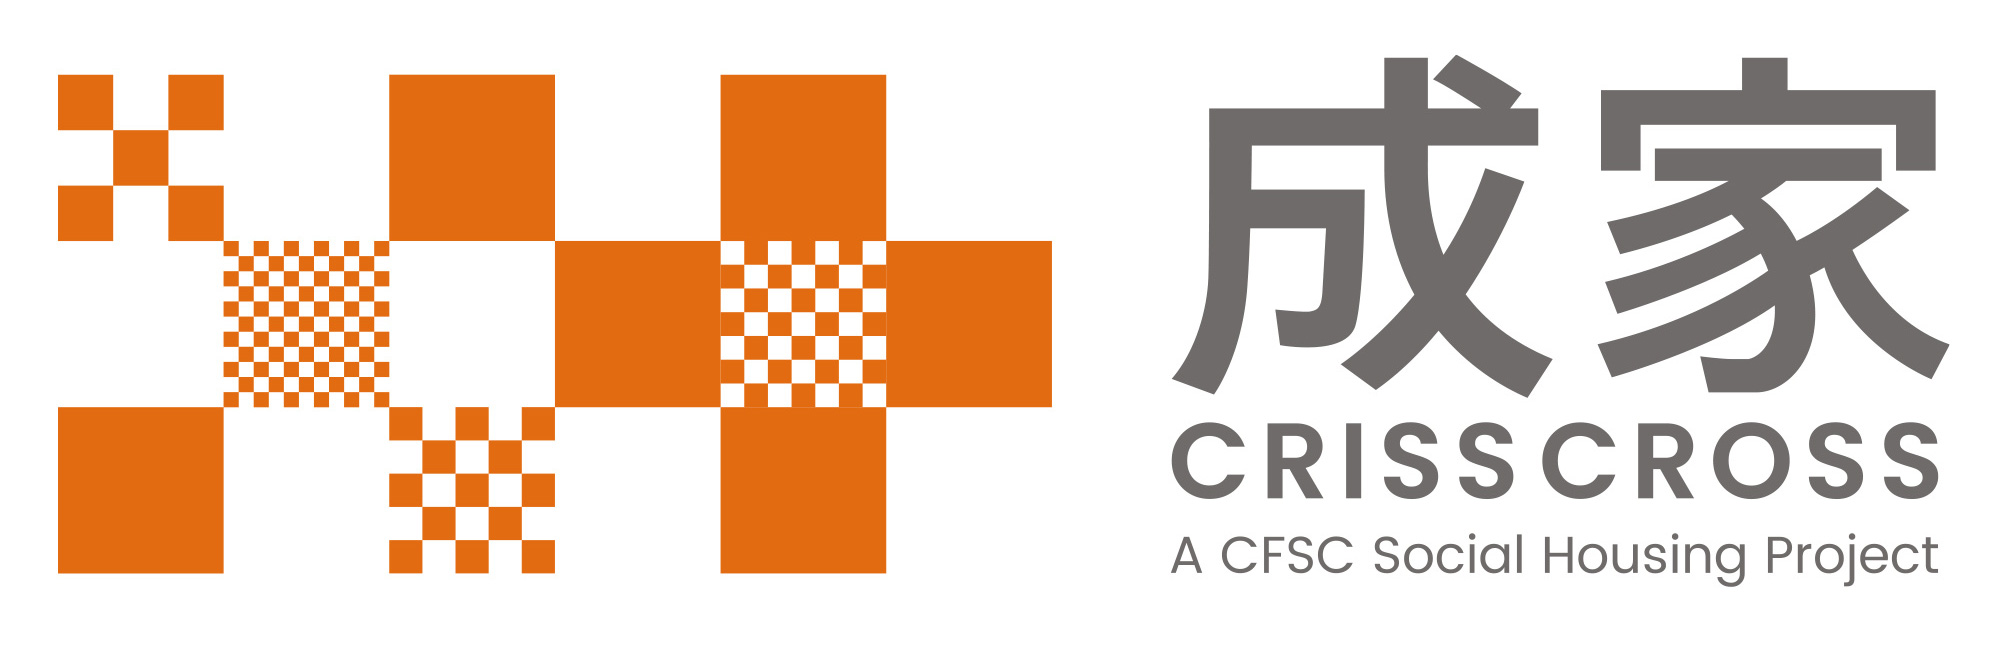 成家 CRISSCROSS - 基督教家庭服務中心社會房屋項目